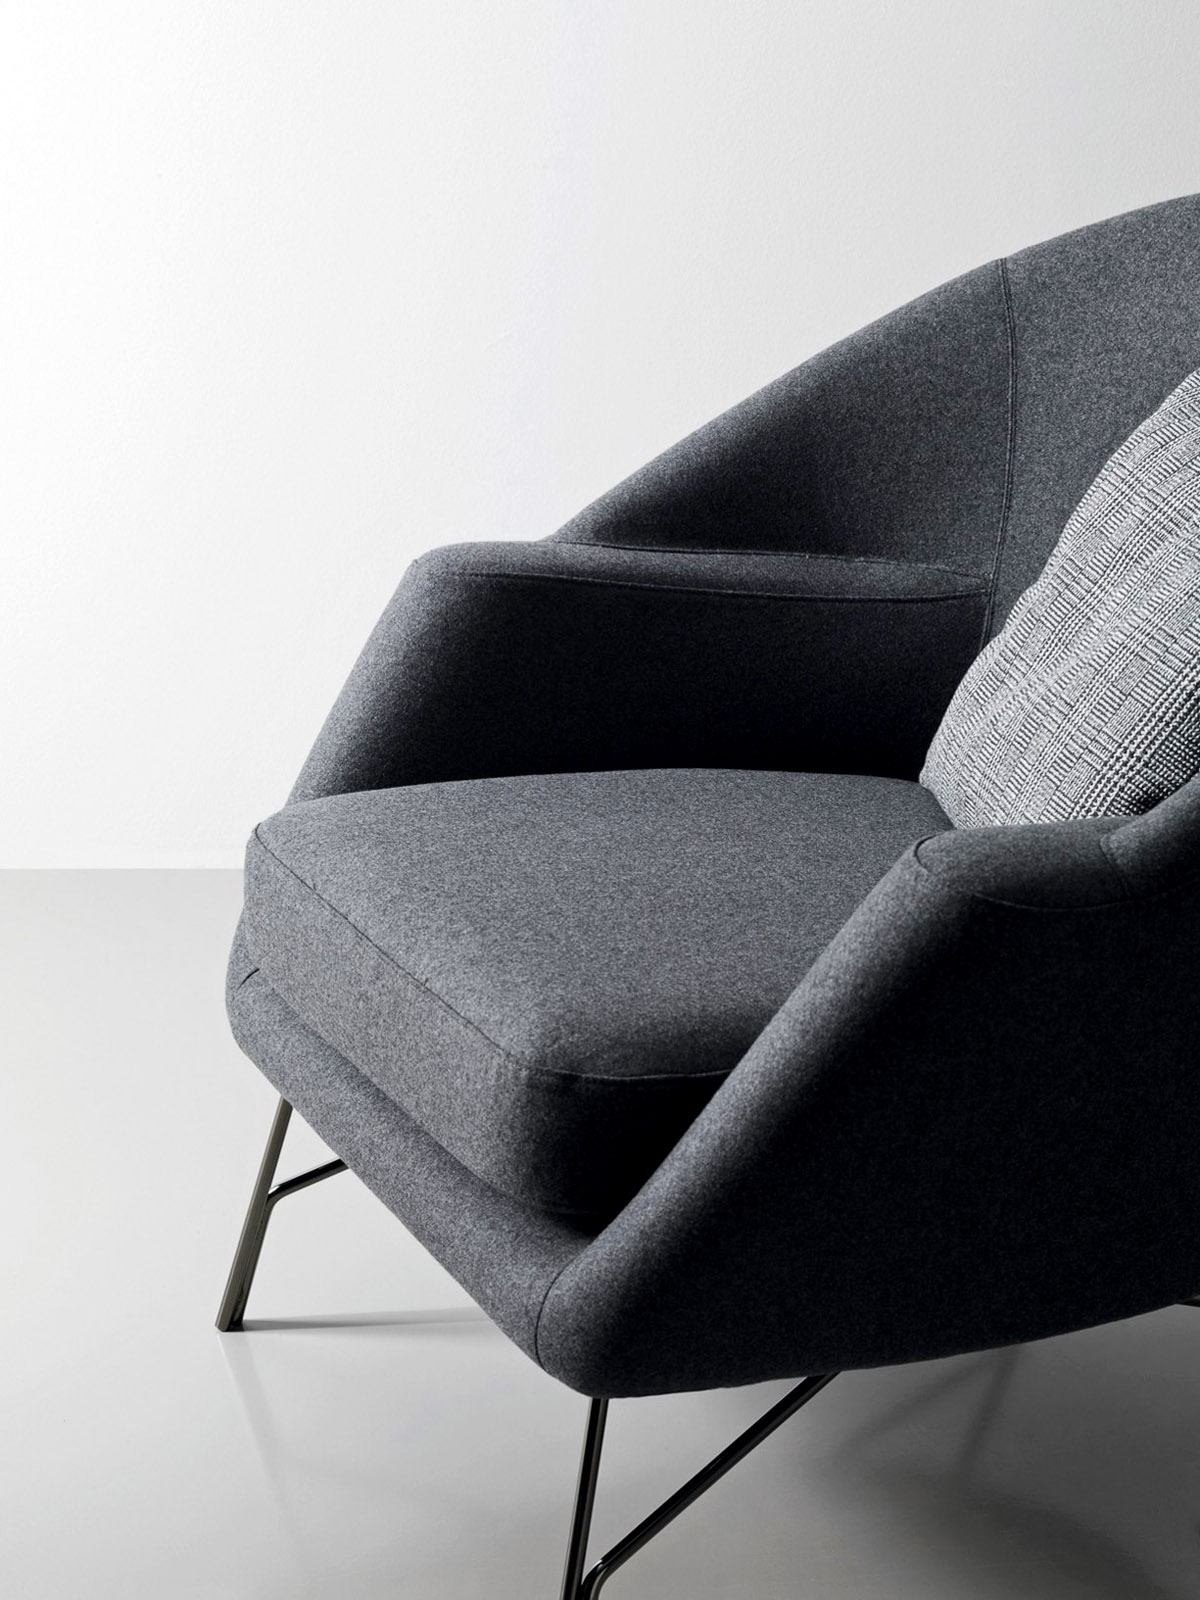 Chillout - кресло для отдыха в стиле модерн, фото